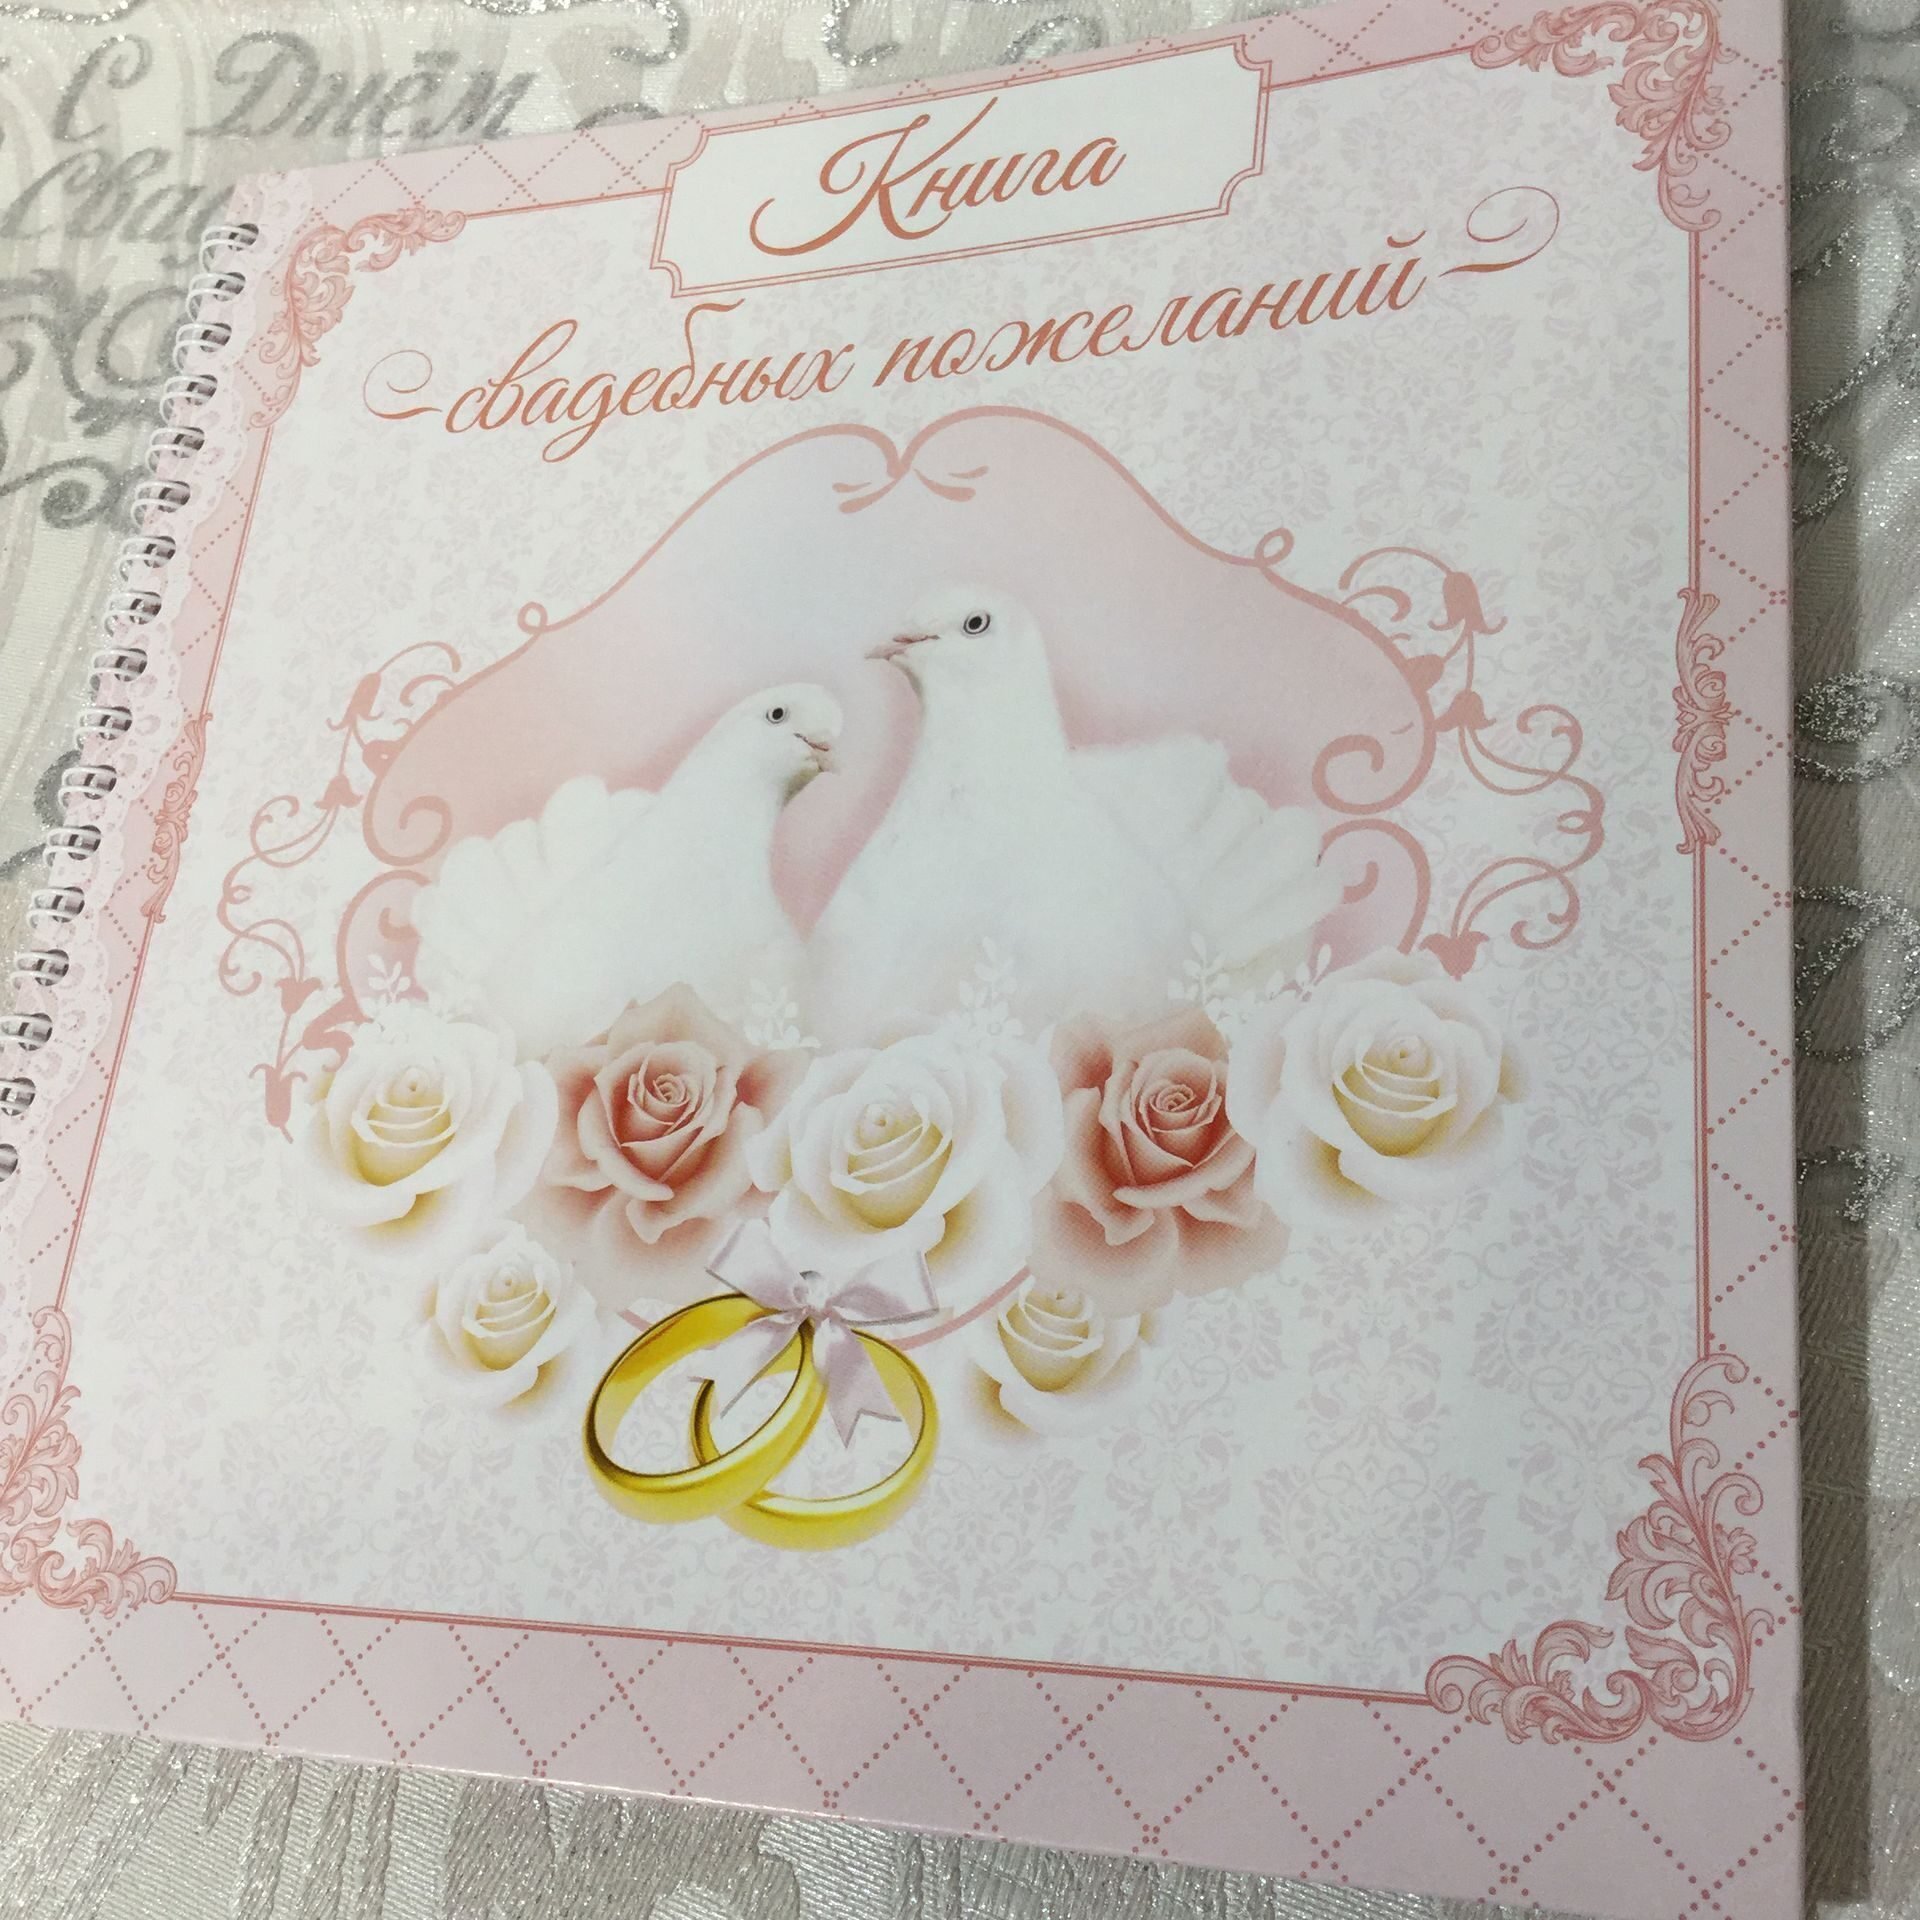 Месяца замужества. Свадебные поздравления. Свадебная открытка. Открытка "к свадьбе". Открытки на свадьбу молодоженам.